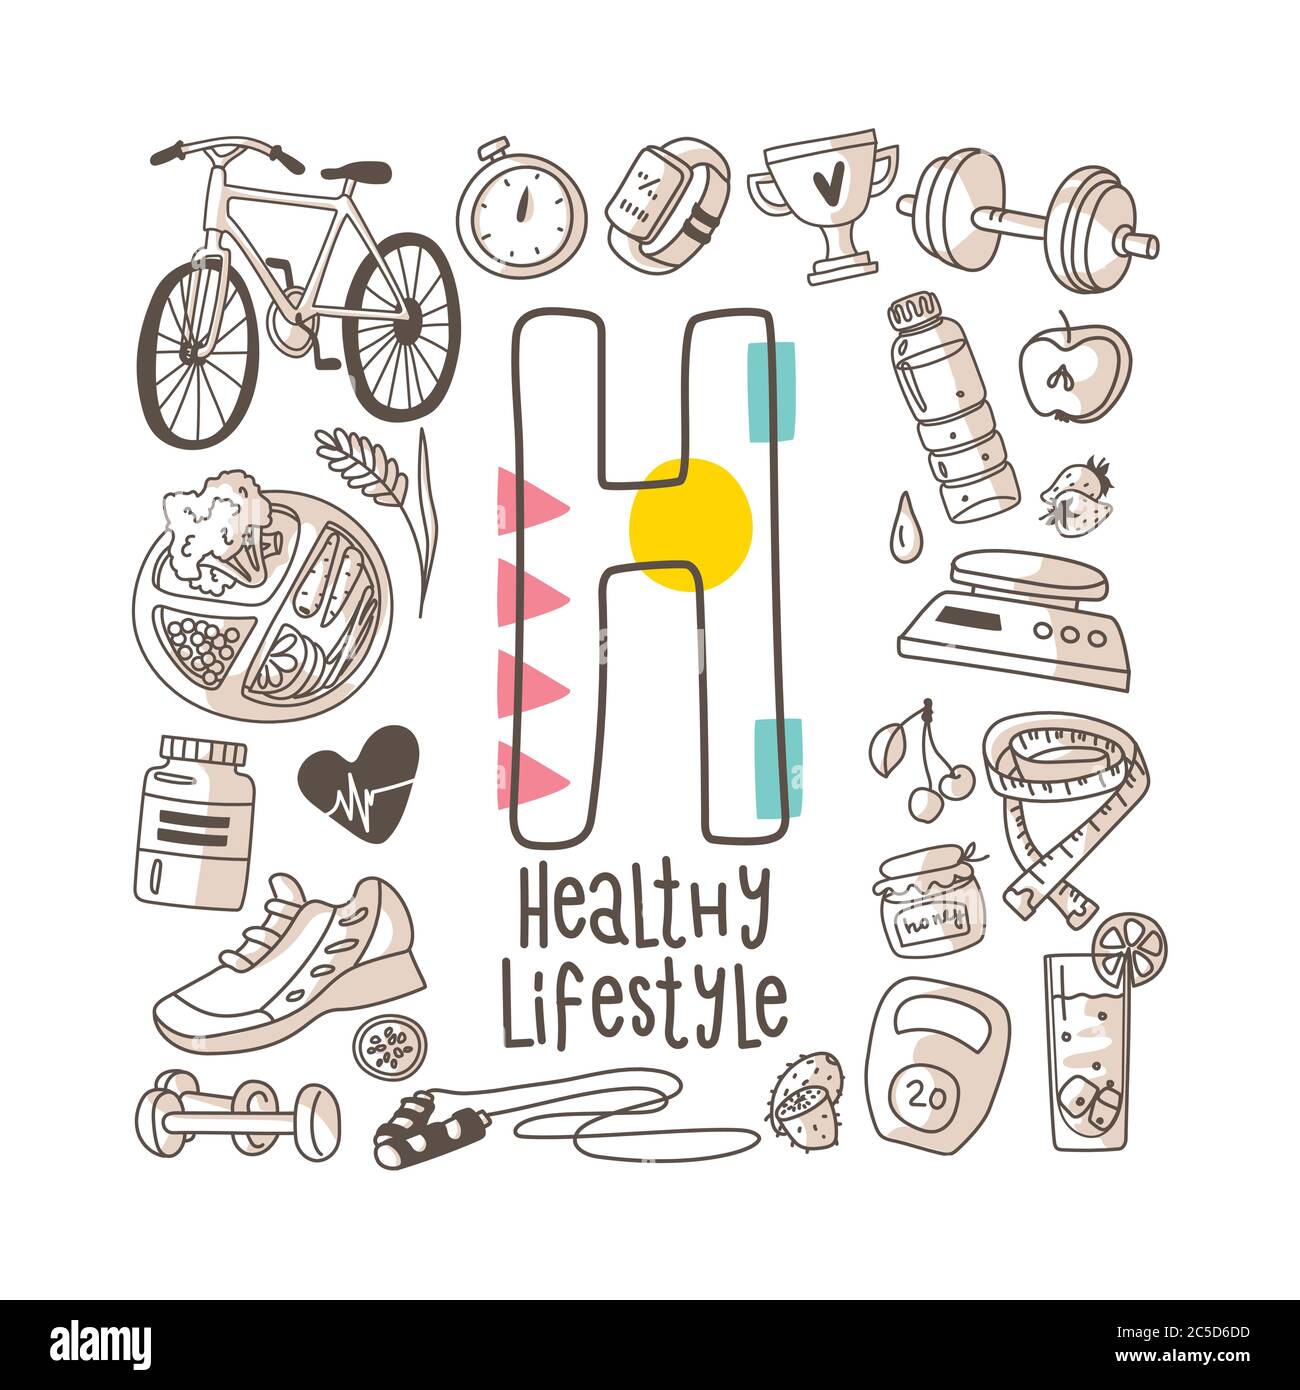 Lettera H - stile di vita sano, serie di alfabeti carini in stile doodle, illustrazione vettoriale Illustrazione Vettoriale